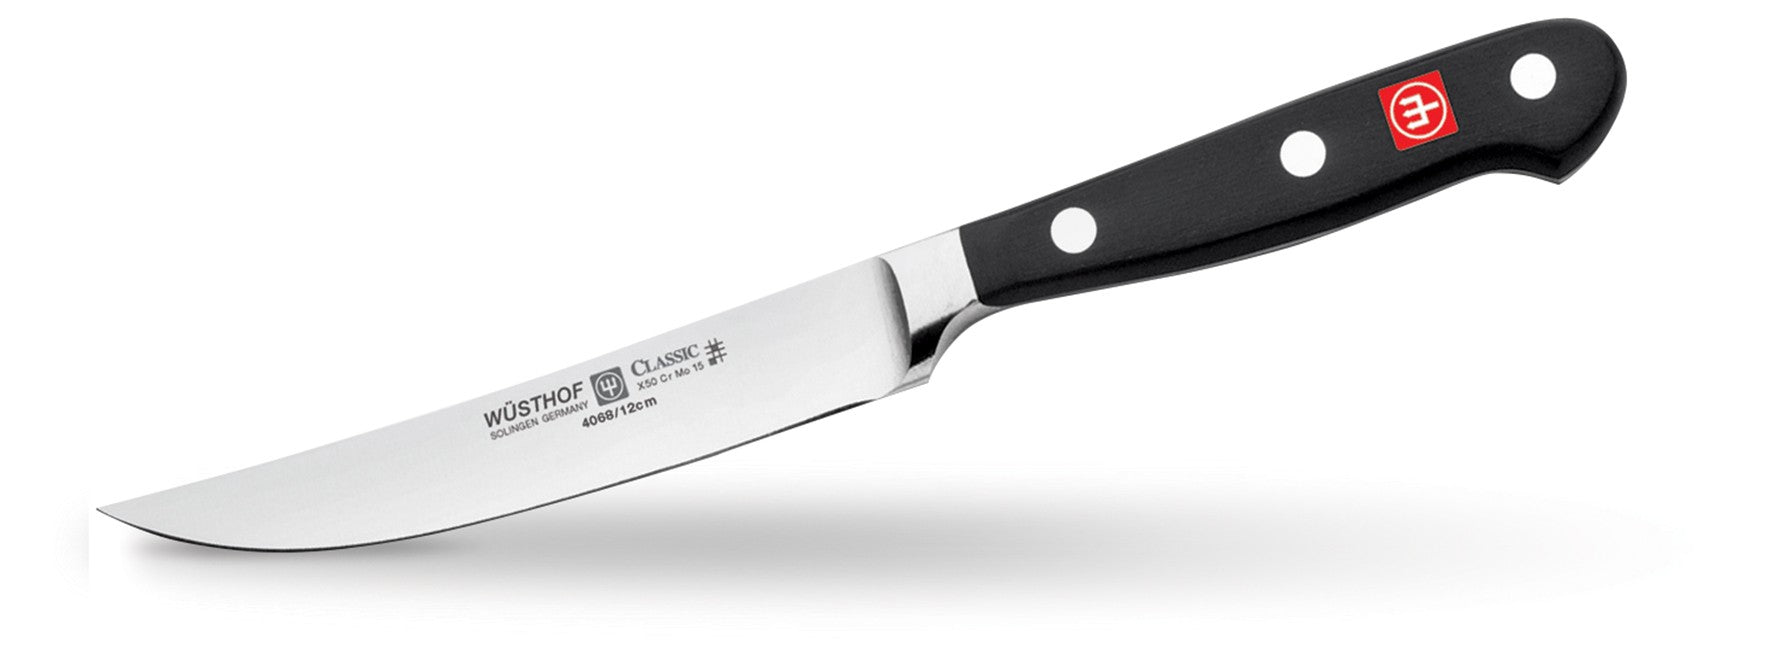 Wusthof Stainless Steel Steak Knives